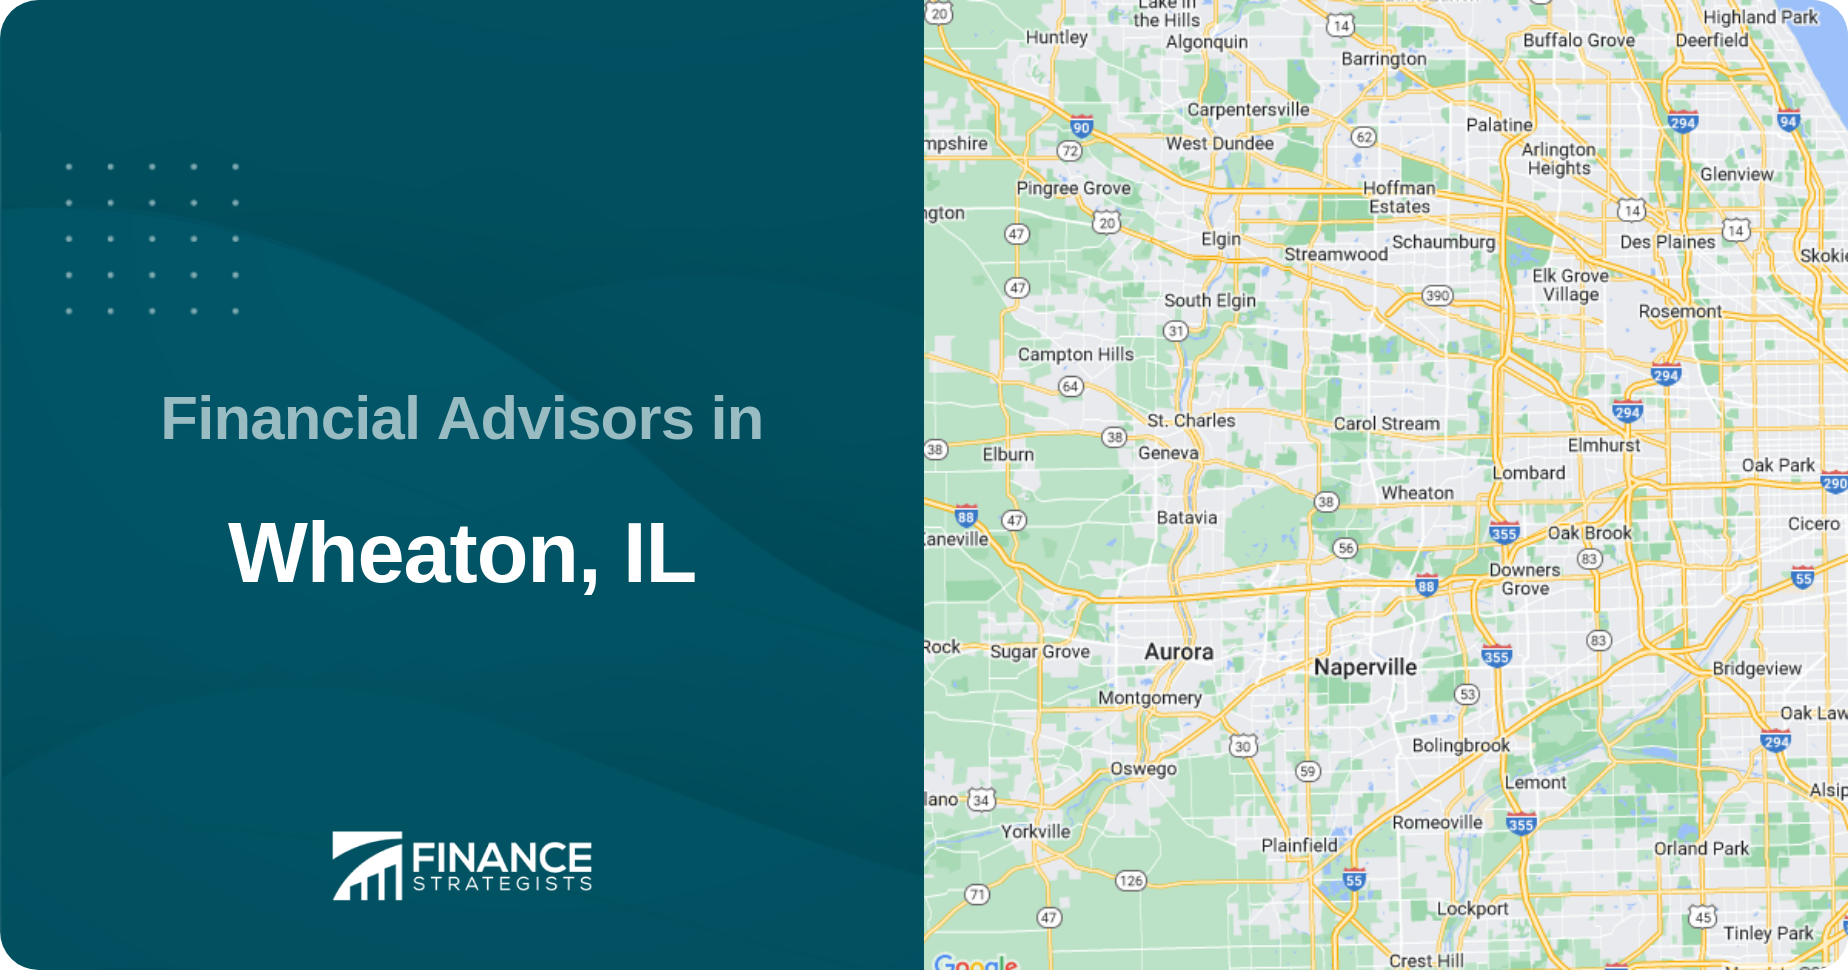 Financial Advisors in Wheaton, IL